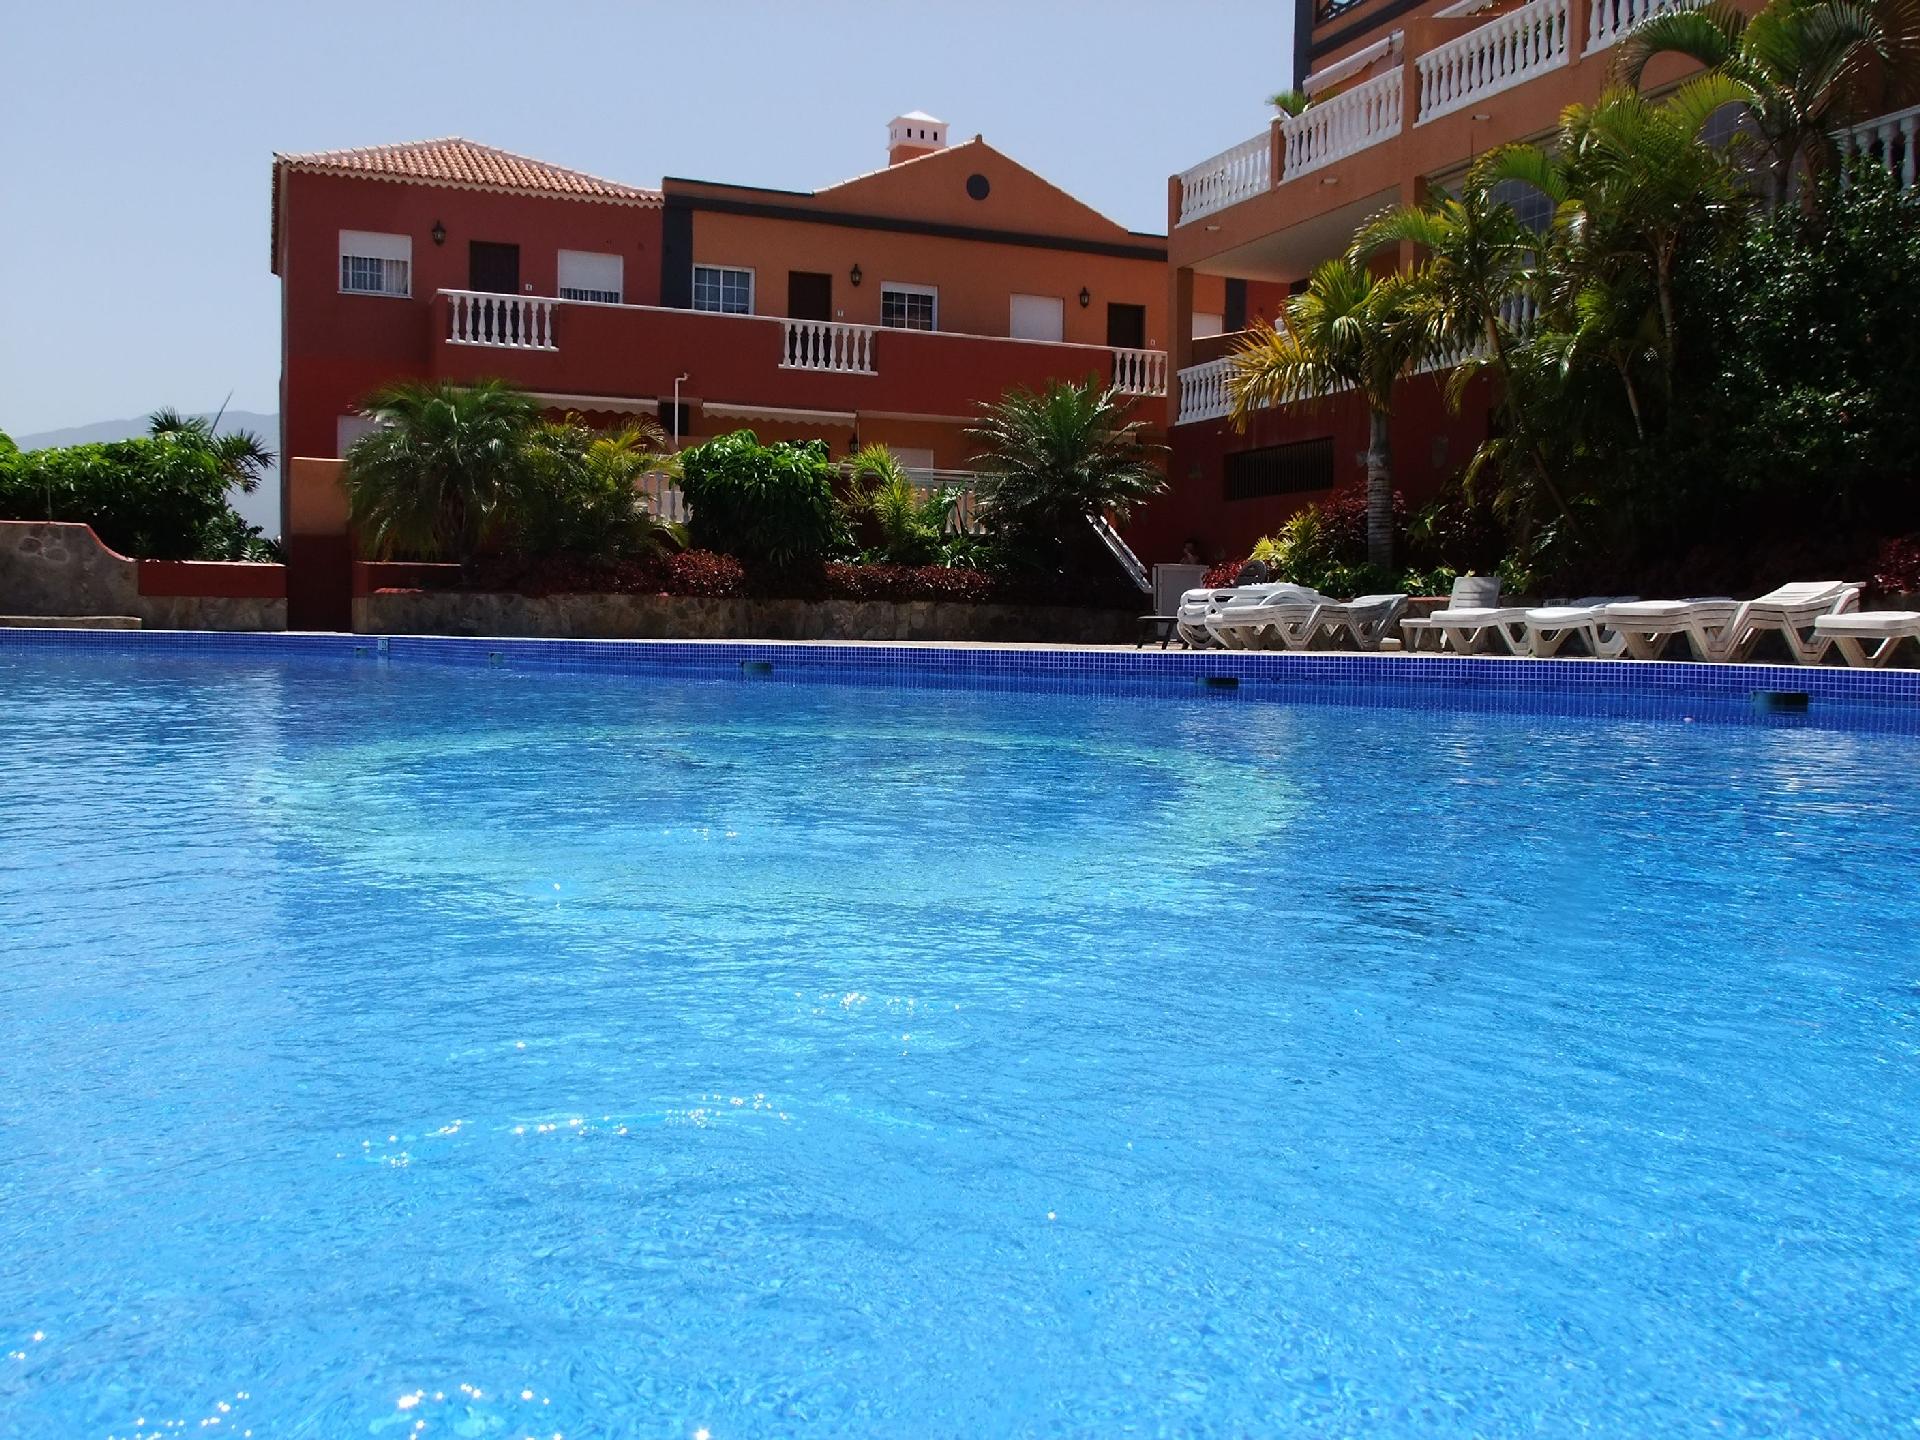 Ferienwohnung für 3 Personen ca. 90 m² i Ferienhaus in Spanien